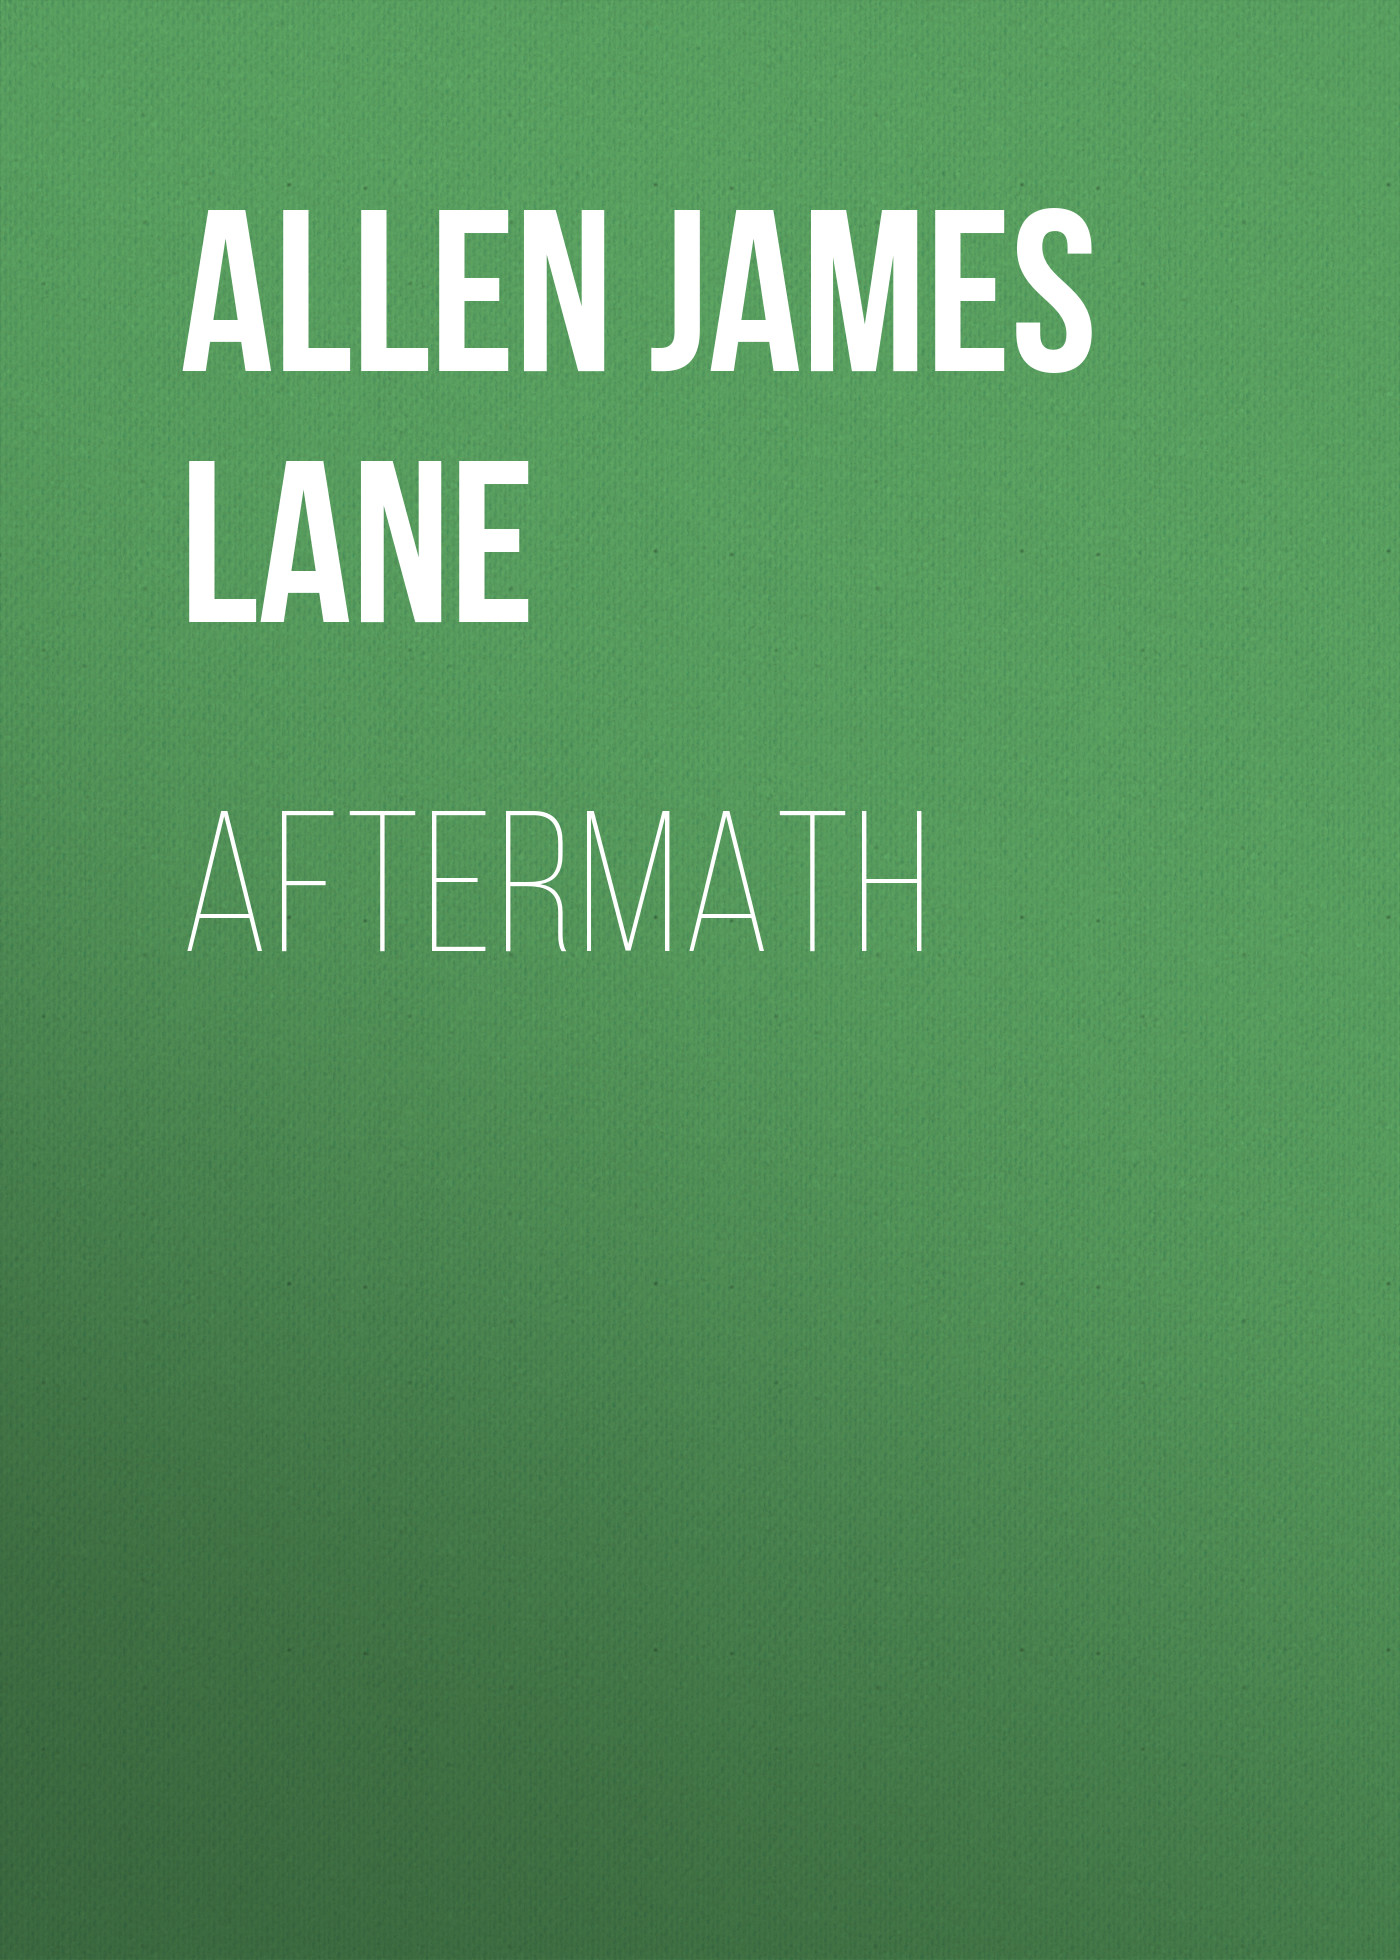 Книга Aftermath из серии , созданная James Allen, может относится к жанру Зарубежная классика, Зарубежная старинная литература. Стоимость электронной книги Aftermath с идентификатором 36365822 составляет 0 руб.